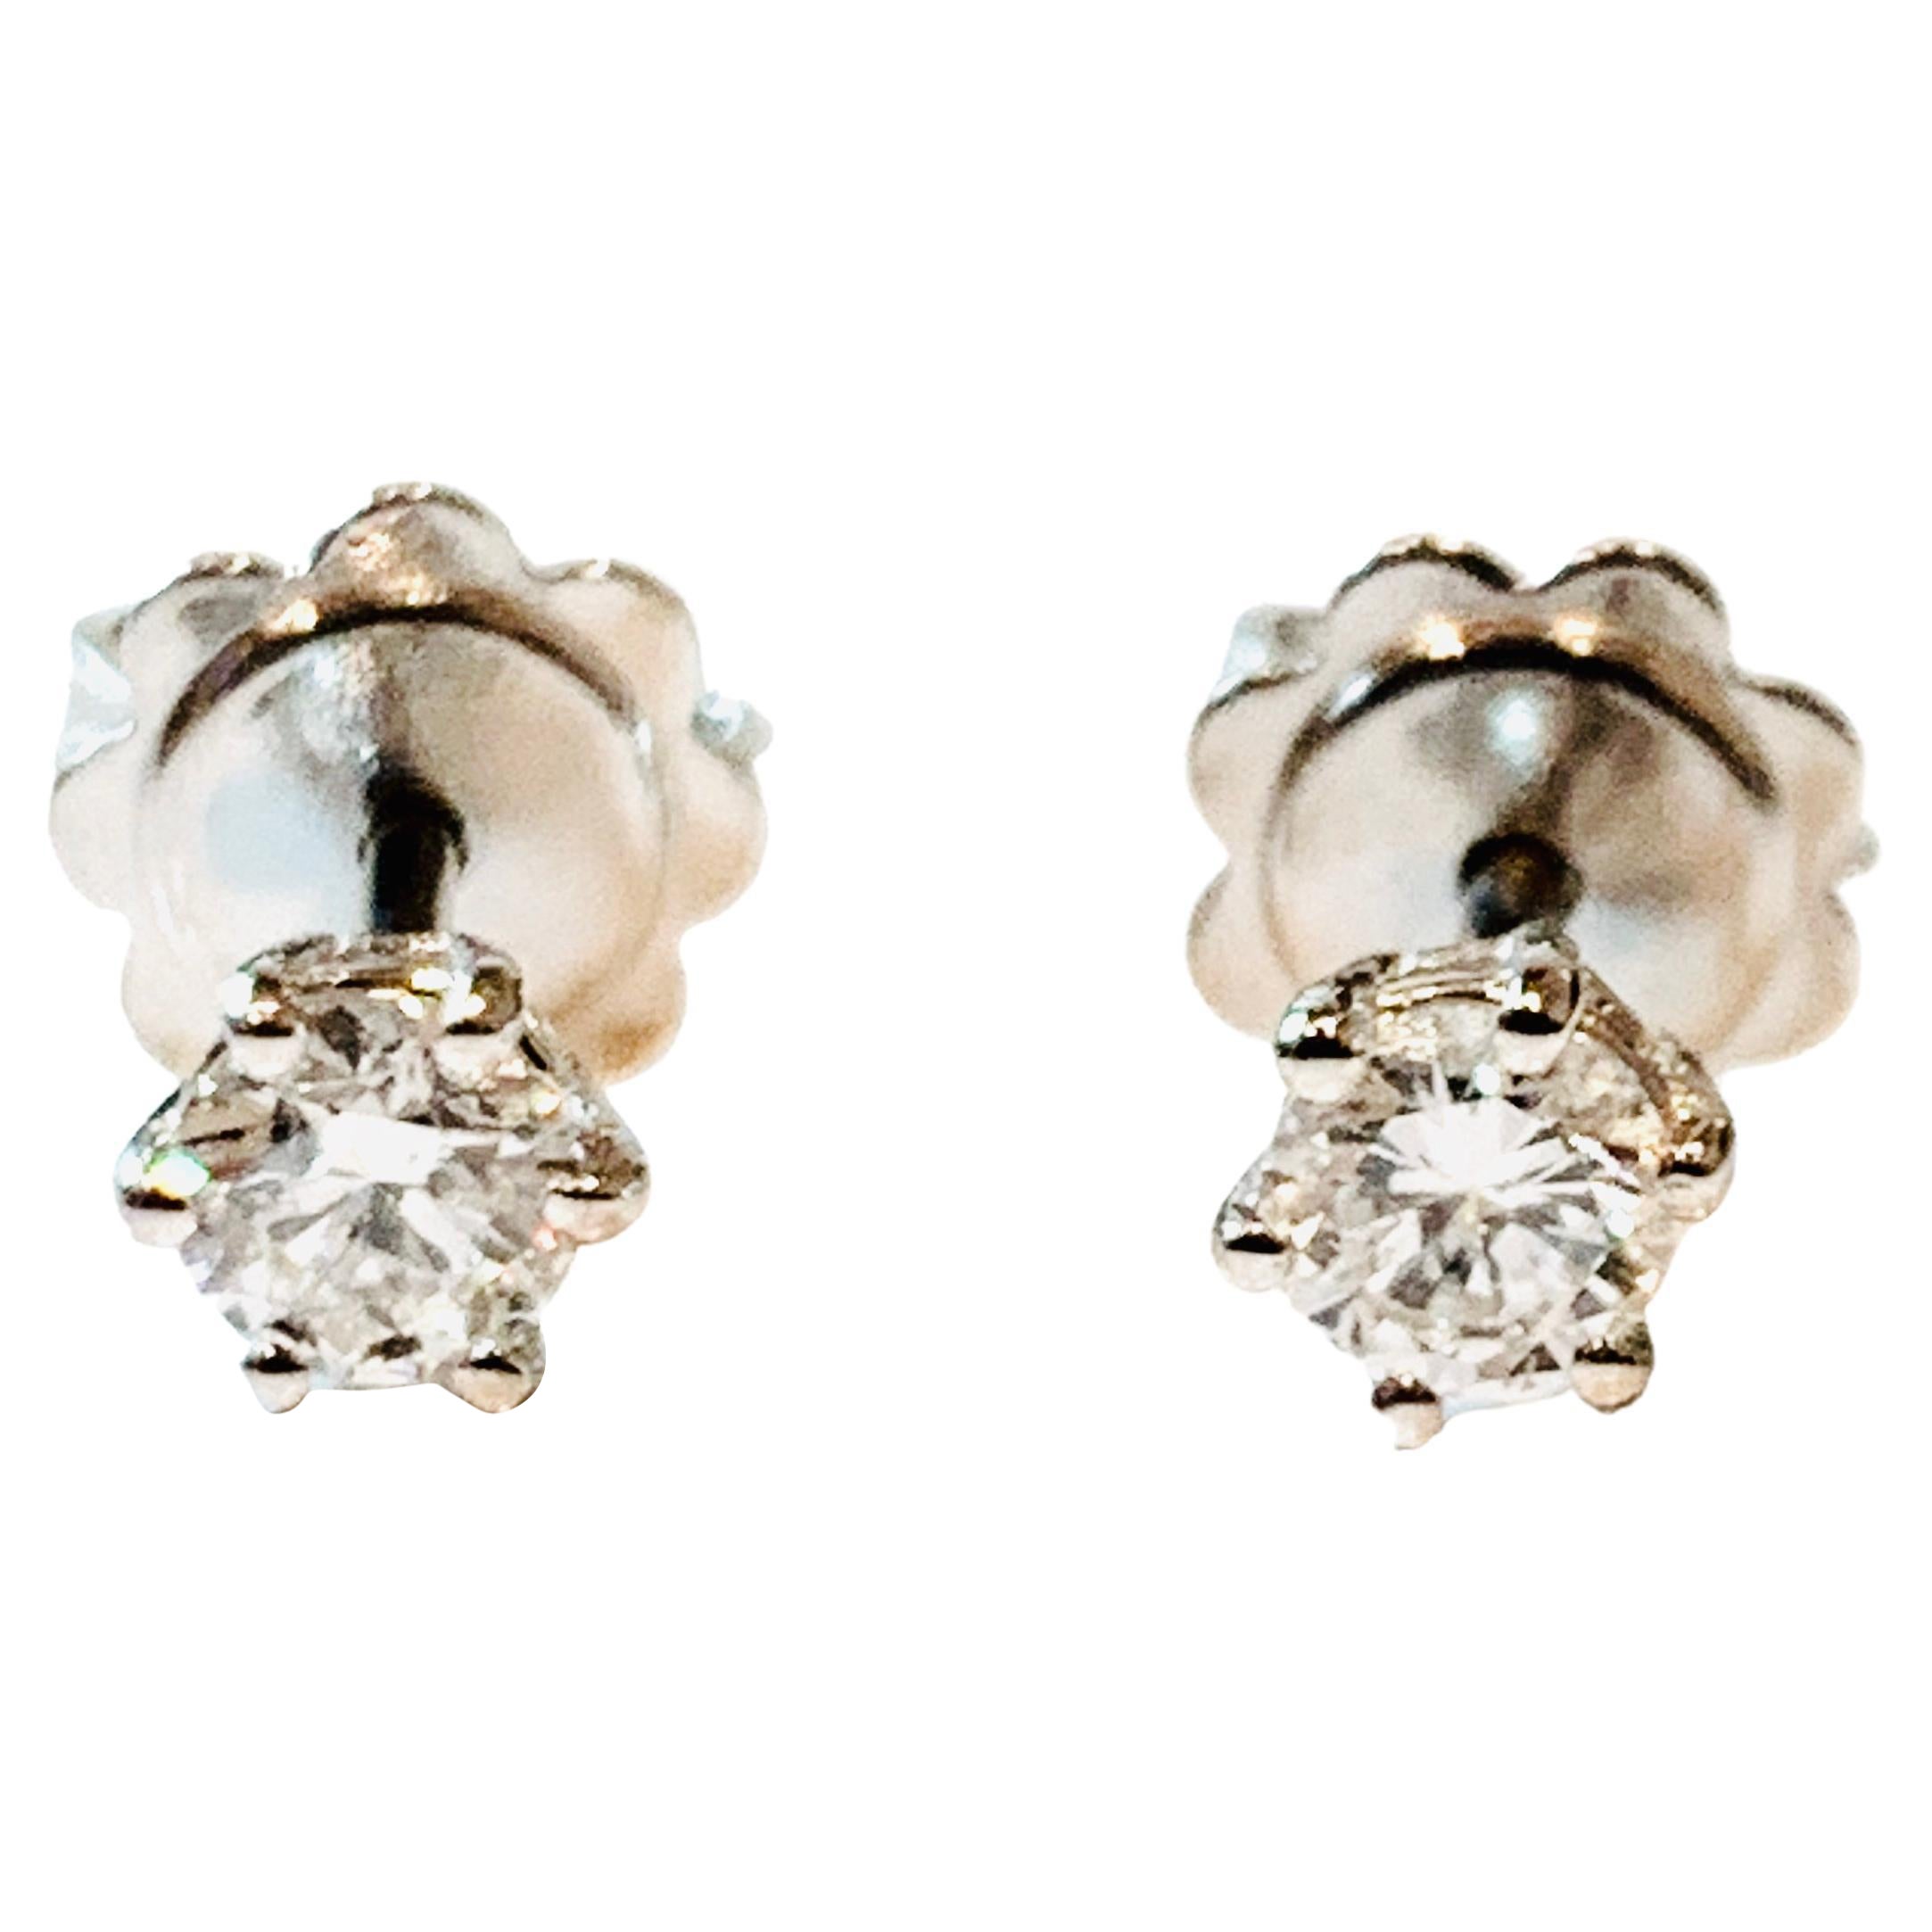 HRD Certified 0.48 Carat Star Diamonds Set in 18Kt White Gold Stud Earrings